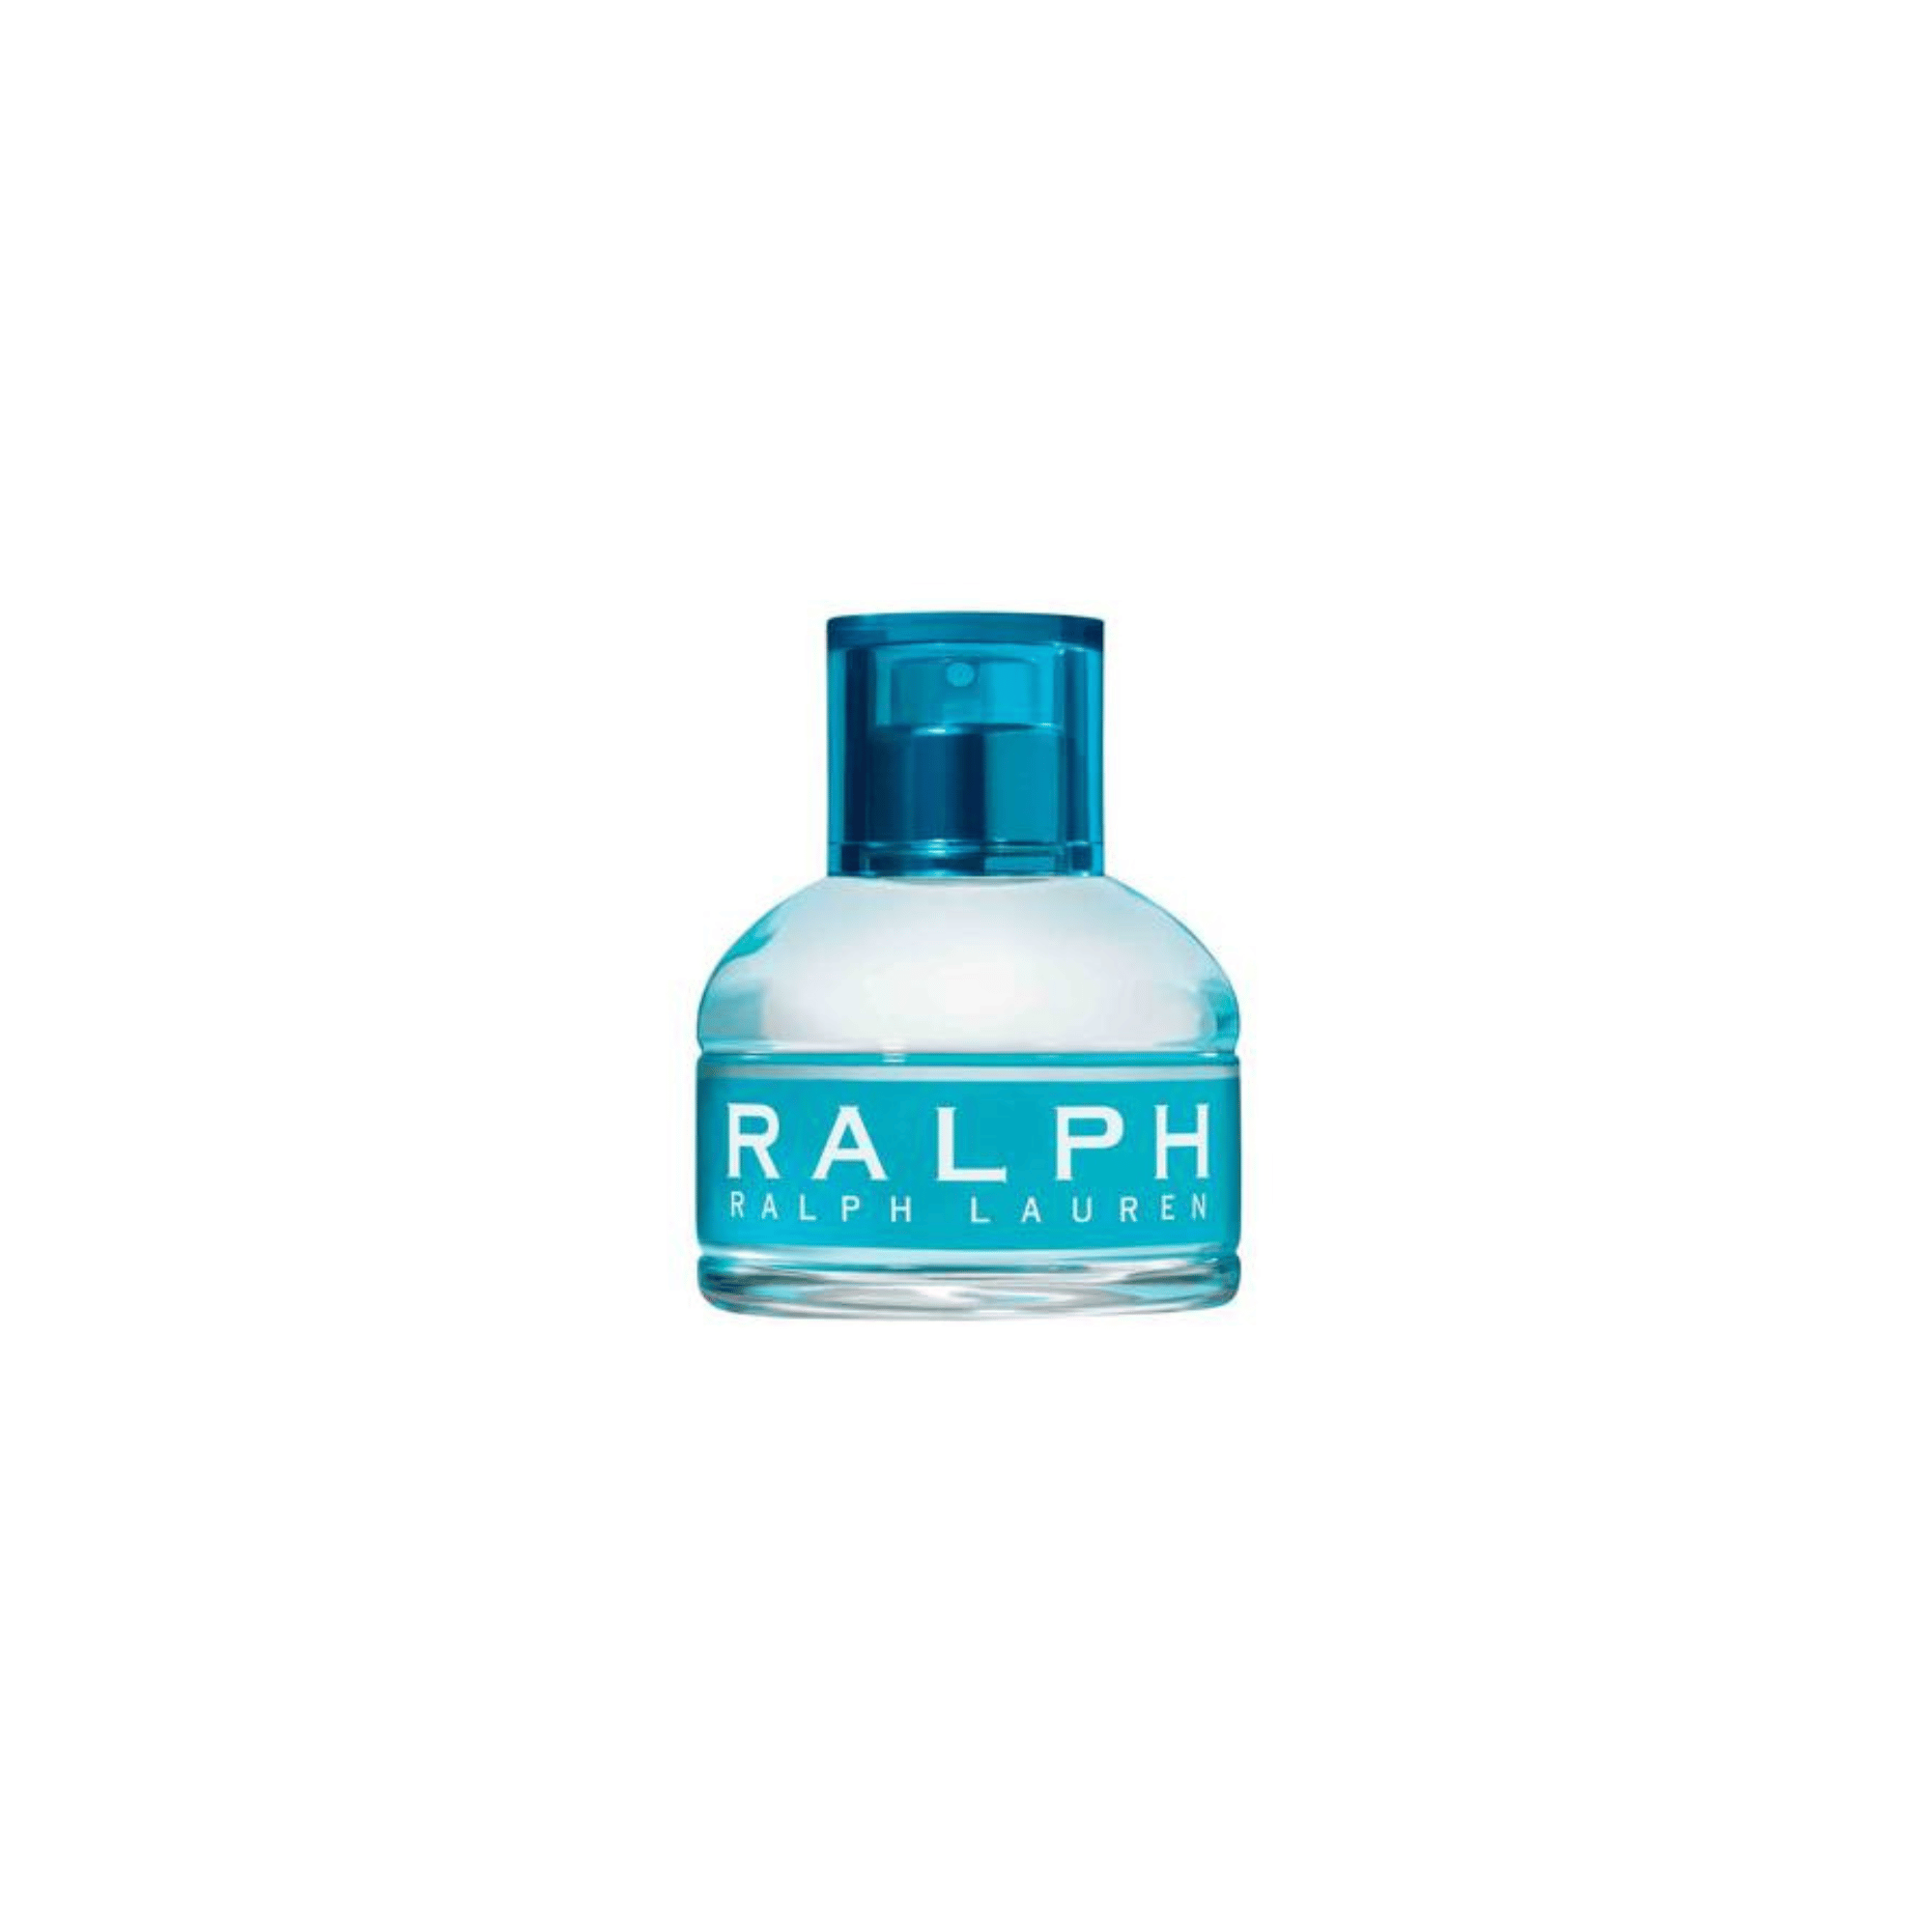 RALPH by RALPH LAUREN Eau de Toilette